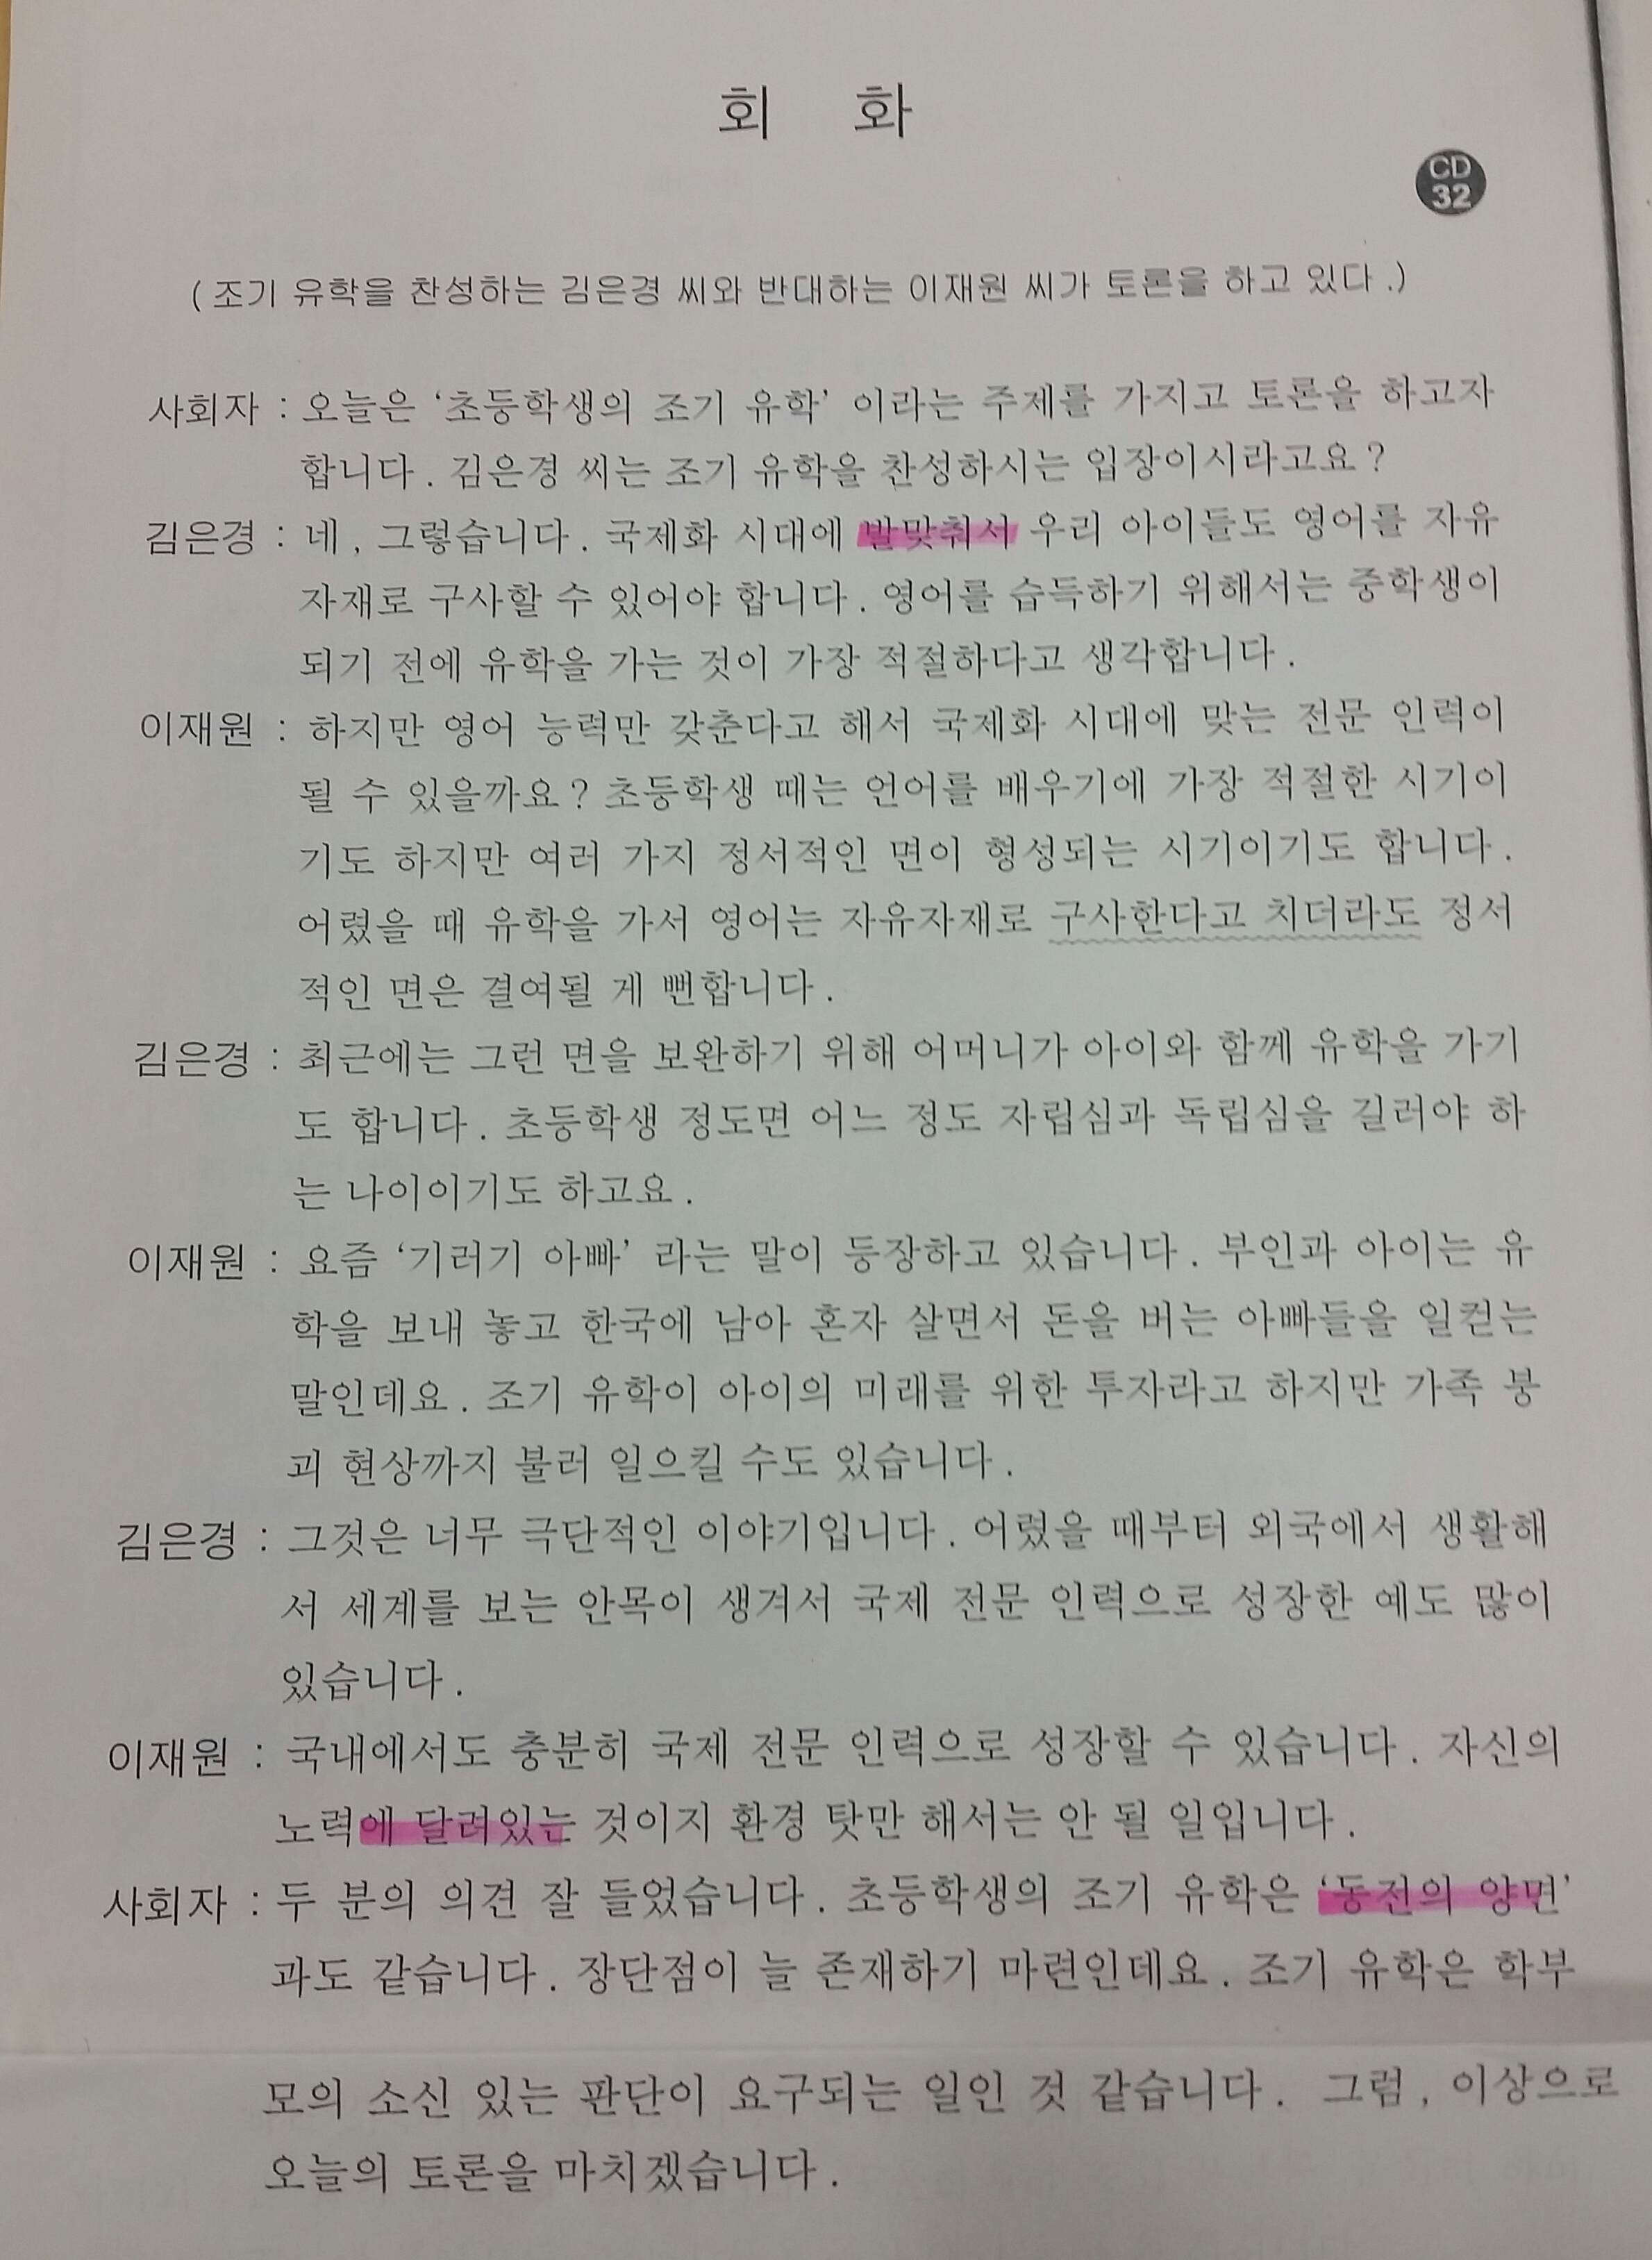 韓国語で 一長一短だ はなんて言う Topik쓰기でセンスよく使える表現 韓国語で人生が変わる Oulmoonのお一人様happyライフ